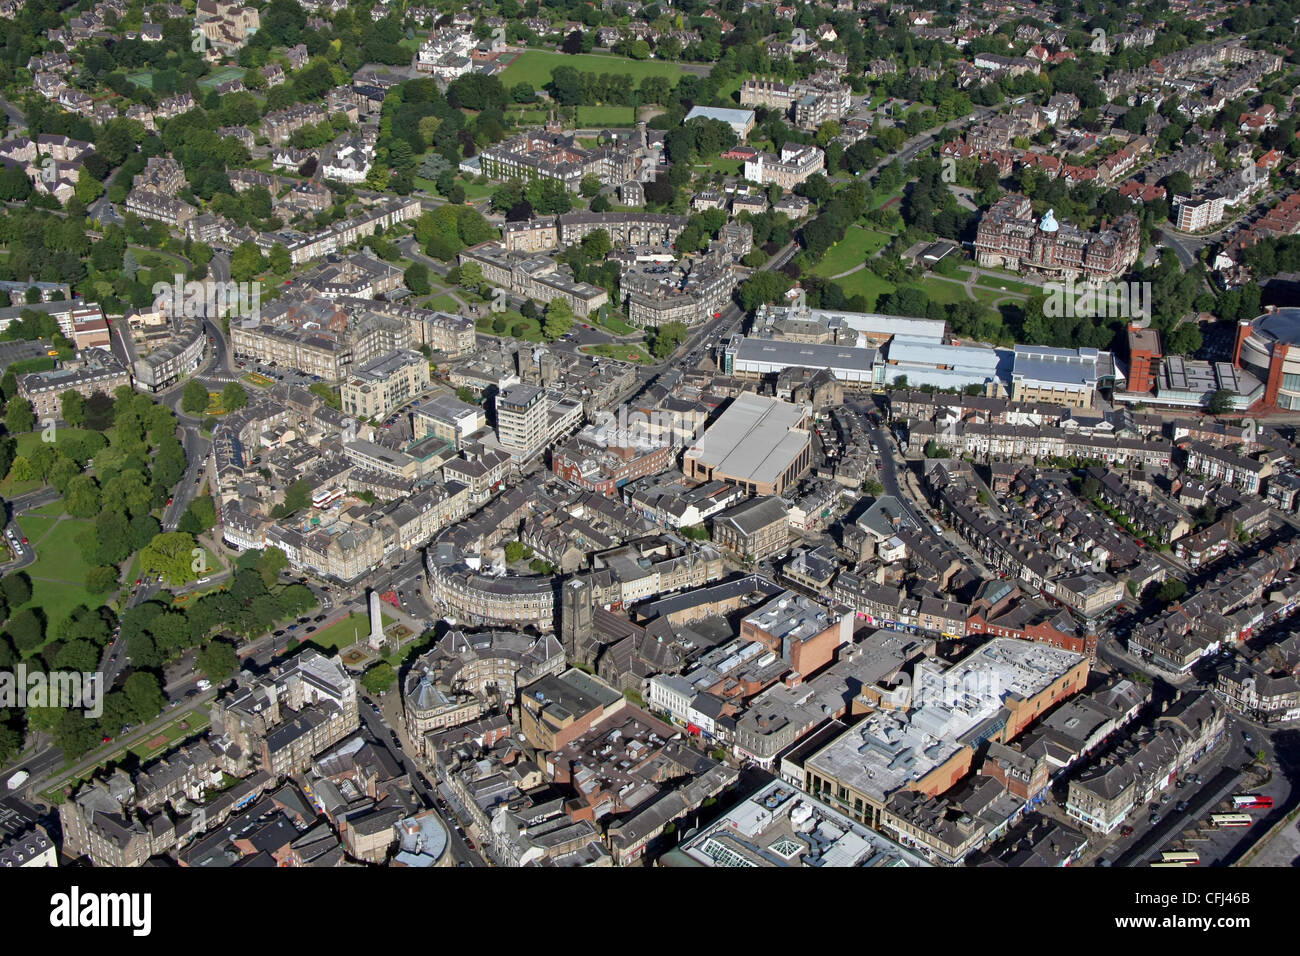 Vista aerea del centro città di Harrogate, con la strada curva di Cambridge Road e Cheltenham Crescent prominente in primo piano Foto Stock